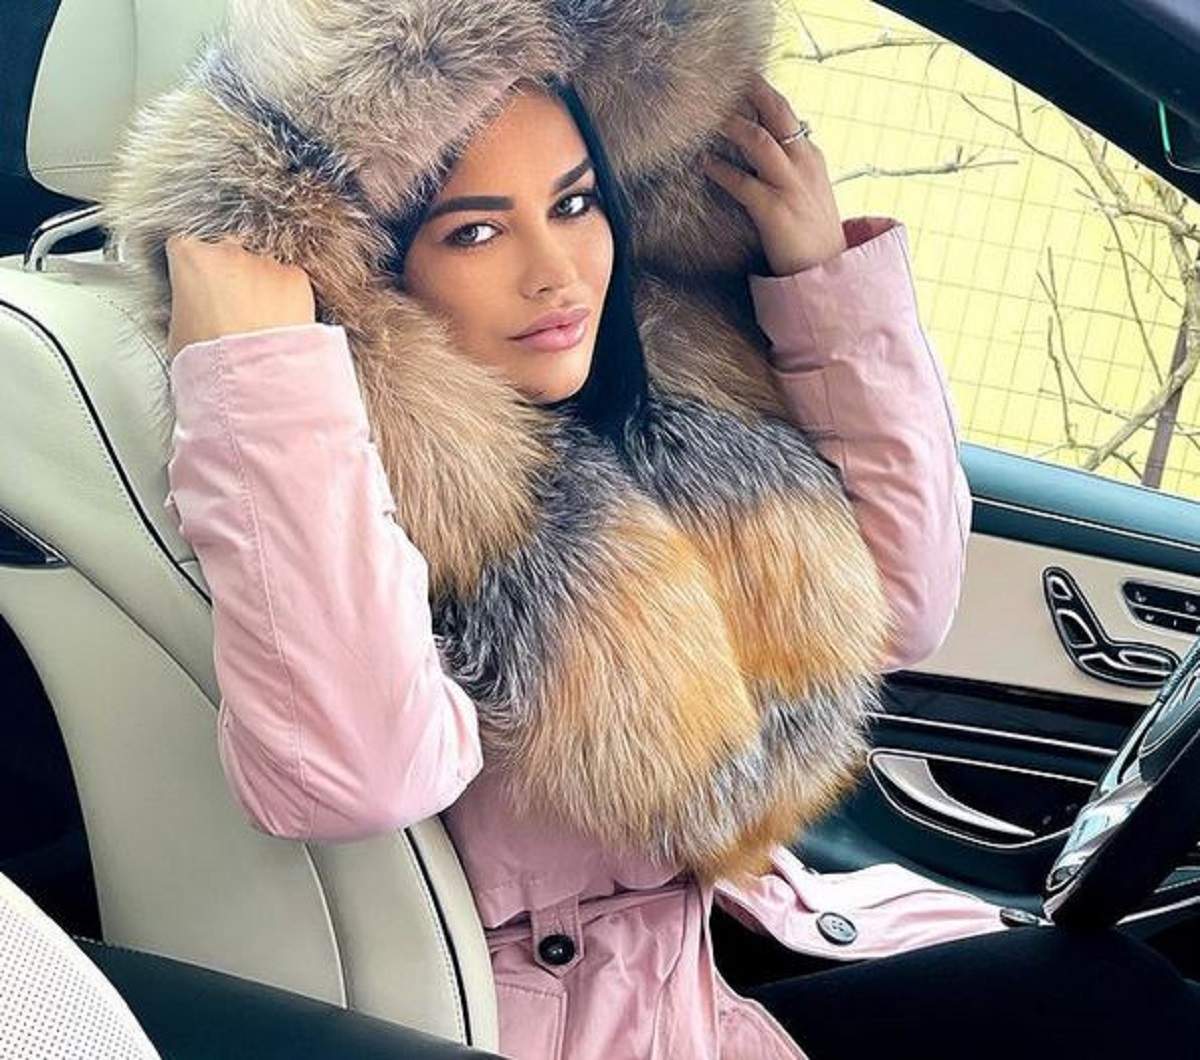 Carmen de la Sălciua se află în mașină. Vedeta poartă o haină de iarnă roz și își ține gluga pe cap.